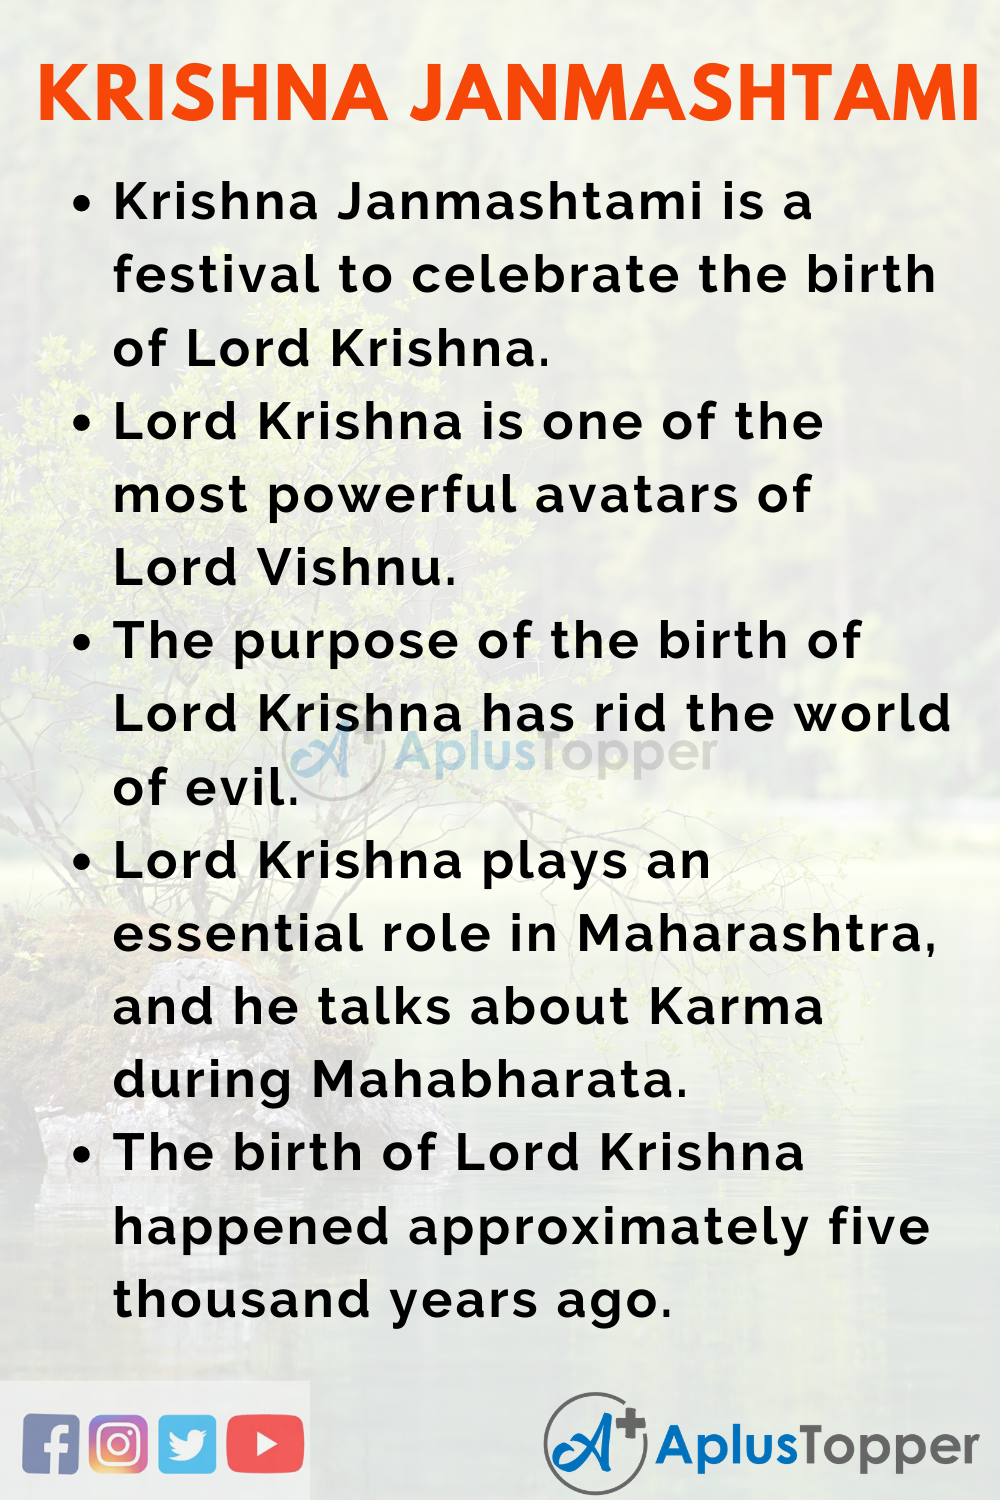 janmashtami essay on lord krishna in english